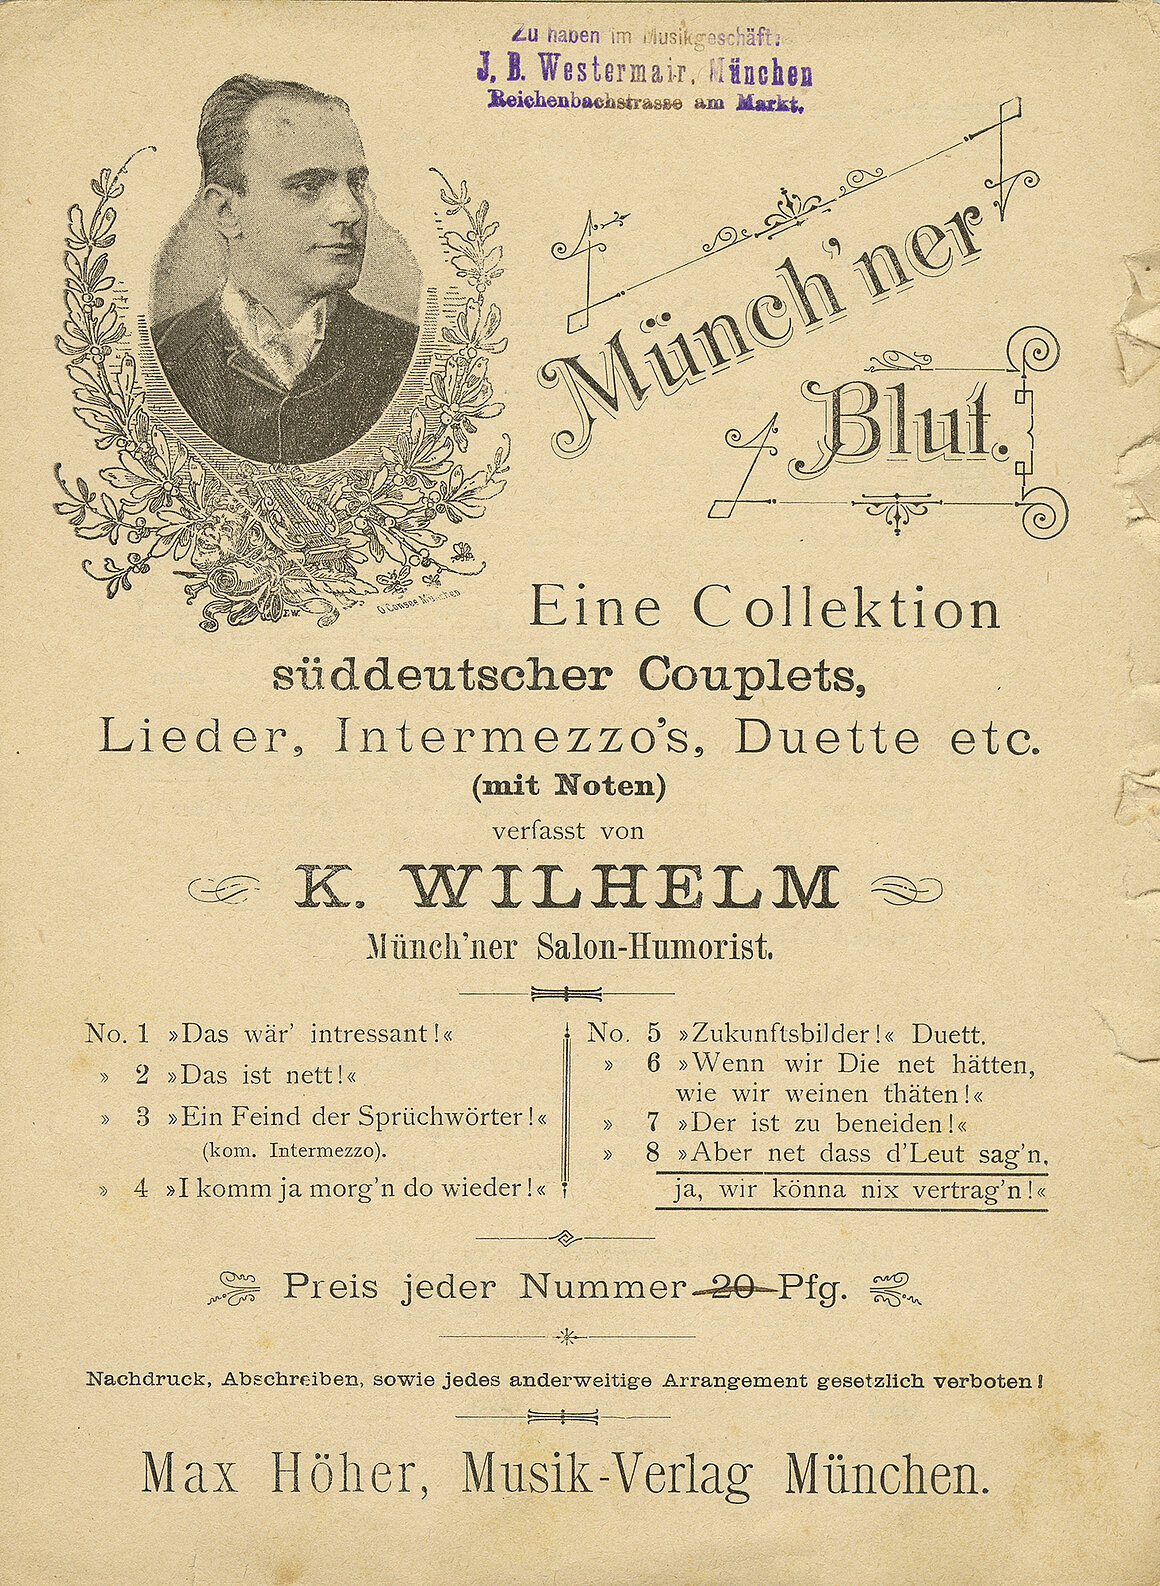 Münchner Blut Nr. 8, Karl Wilhelm, Aber net dass d Leut sag', wir könna nix vertrag'n, um 1900